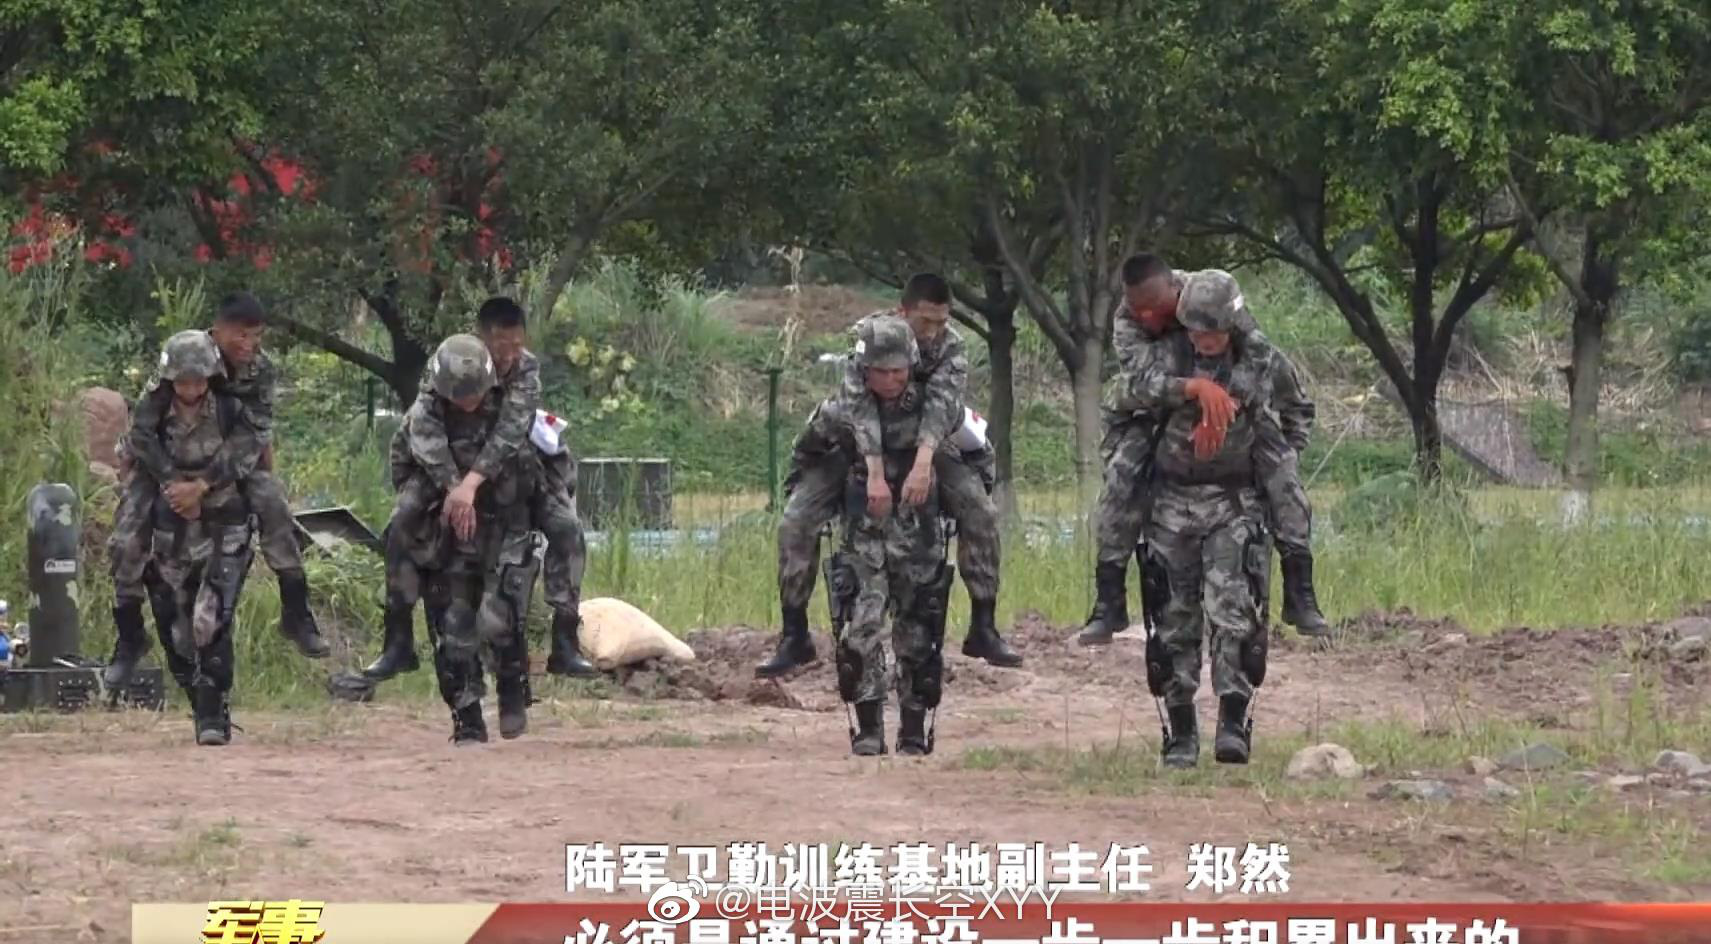 Lính PLA mặc giáp Iron Man: Trung Quốc sắp có lợi thế áp đảo, đây là đáp án của Ấn Độ trước cơn nguy khốn? - Ảnh 2.